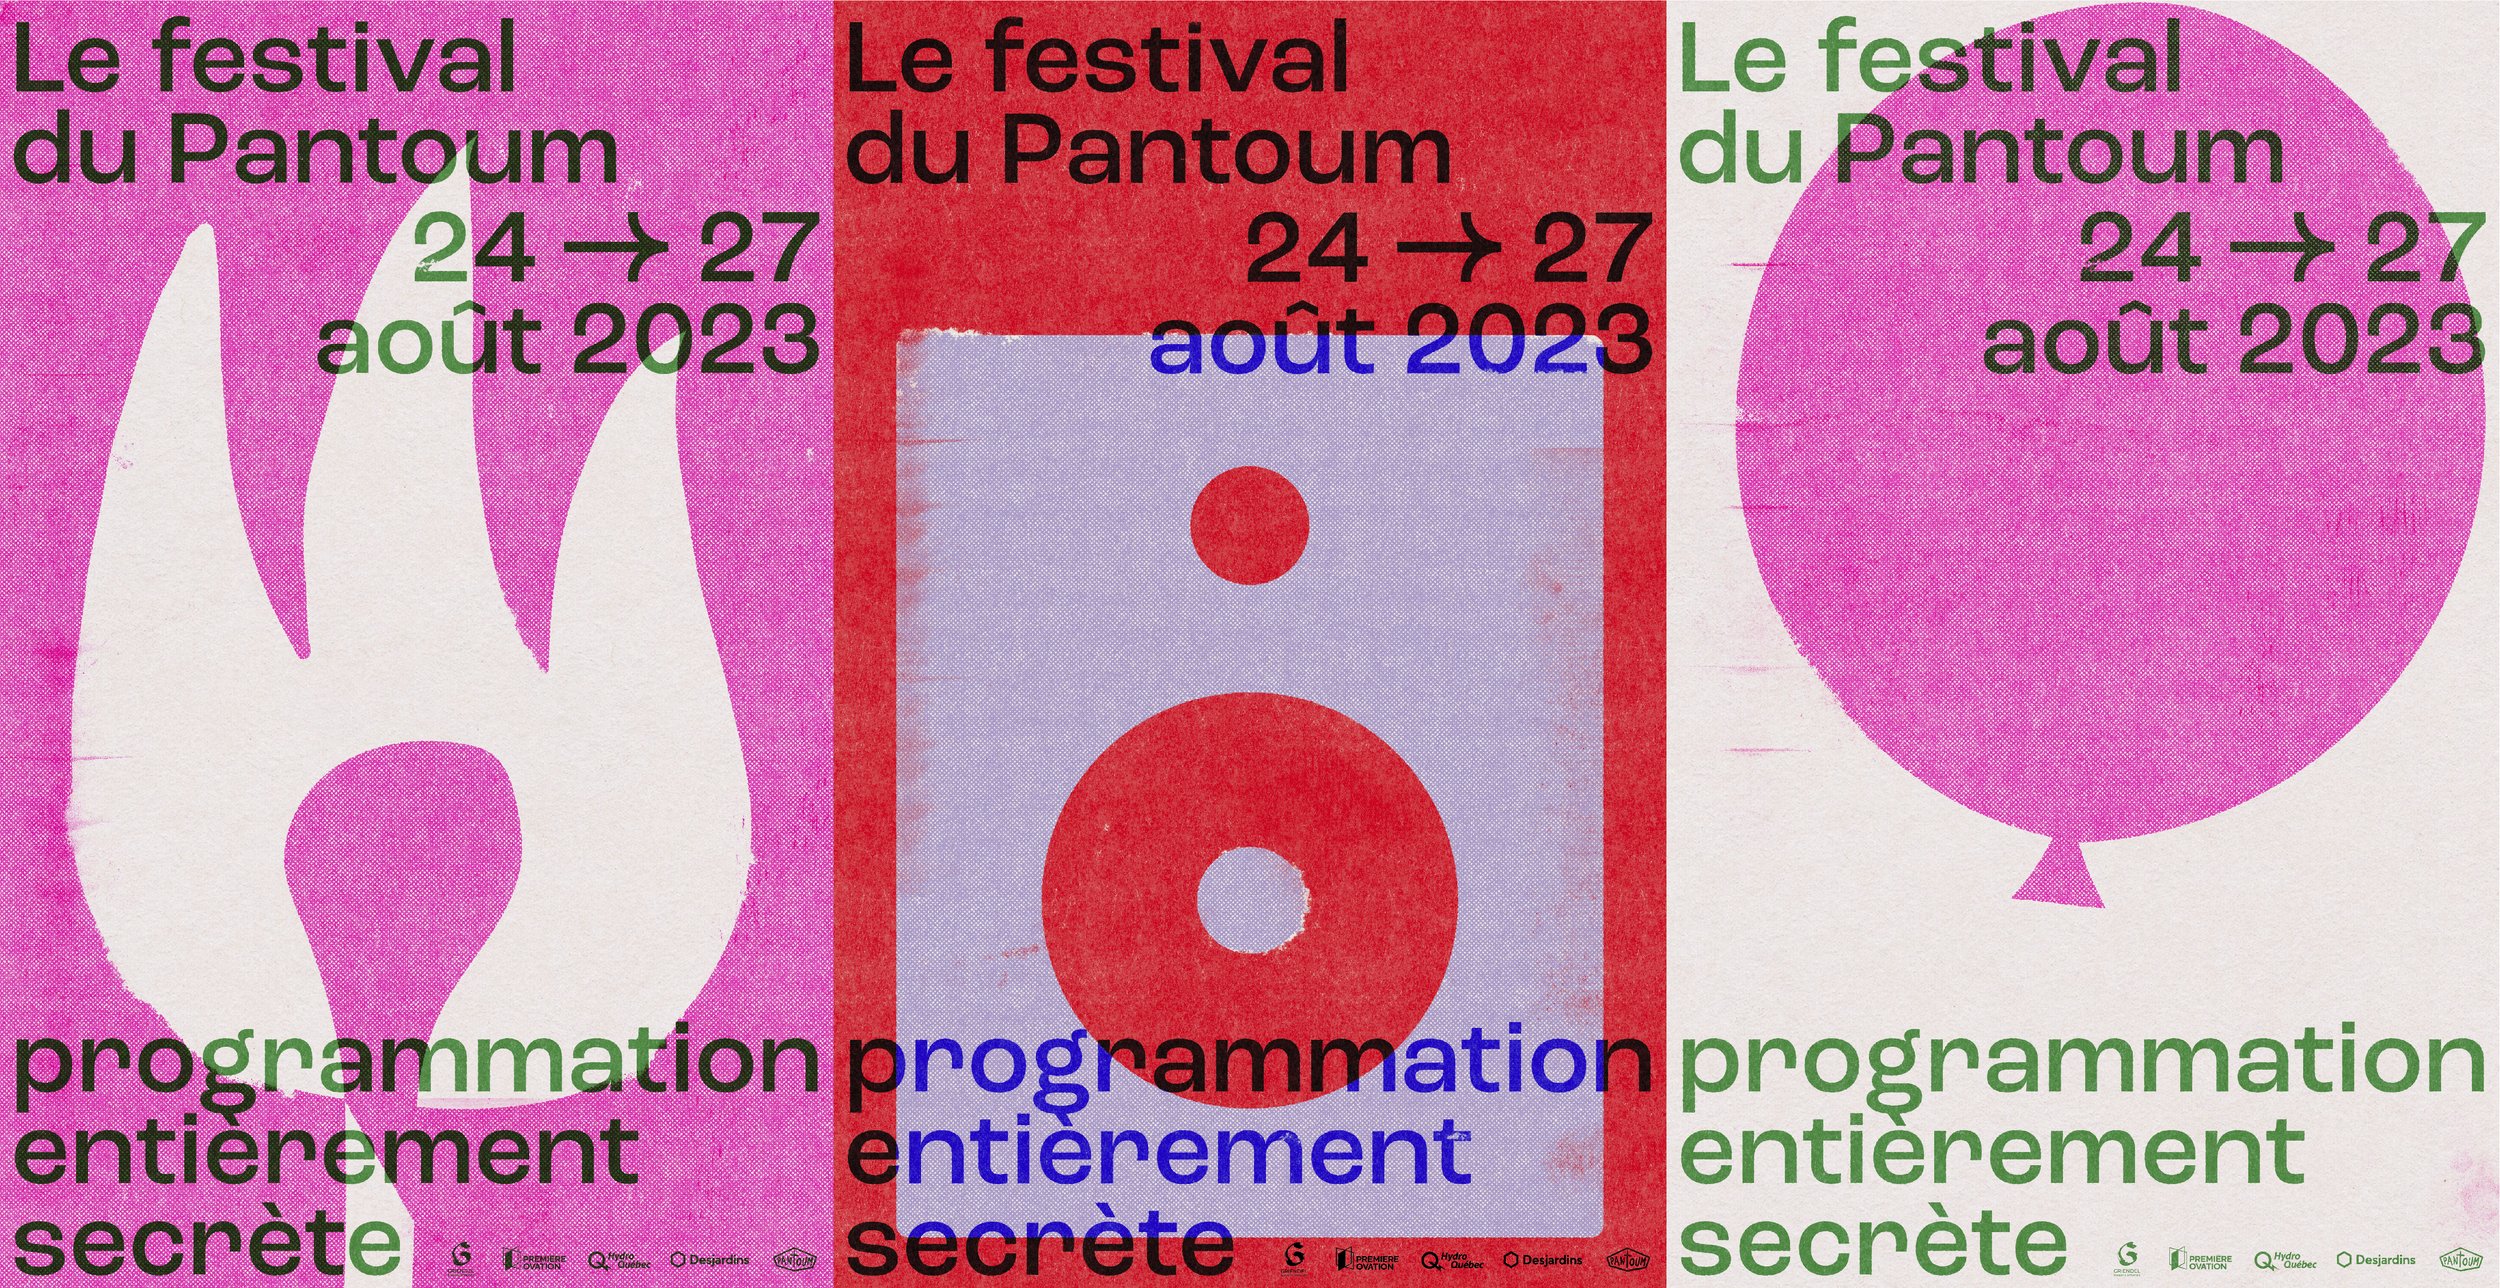 Le festival du Pantoum 2023 — Le Pantoum